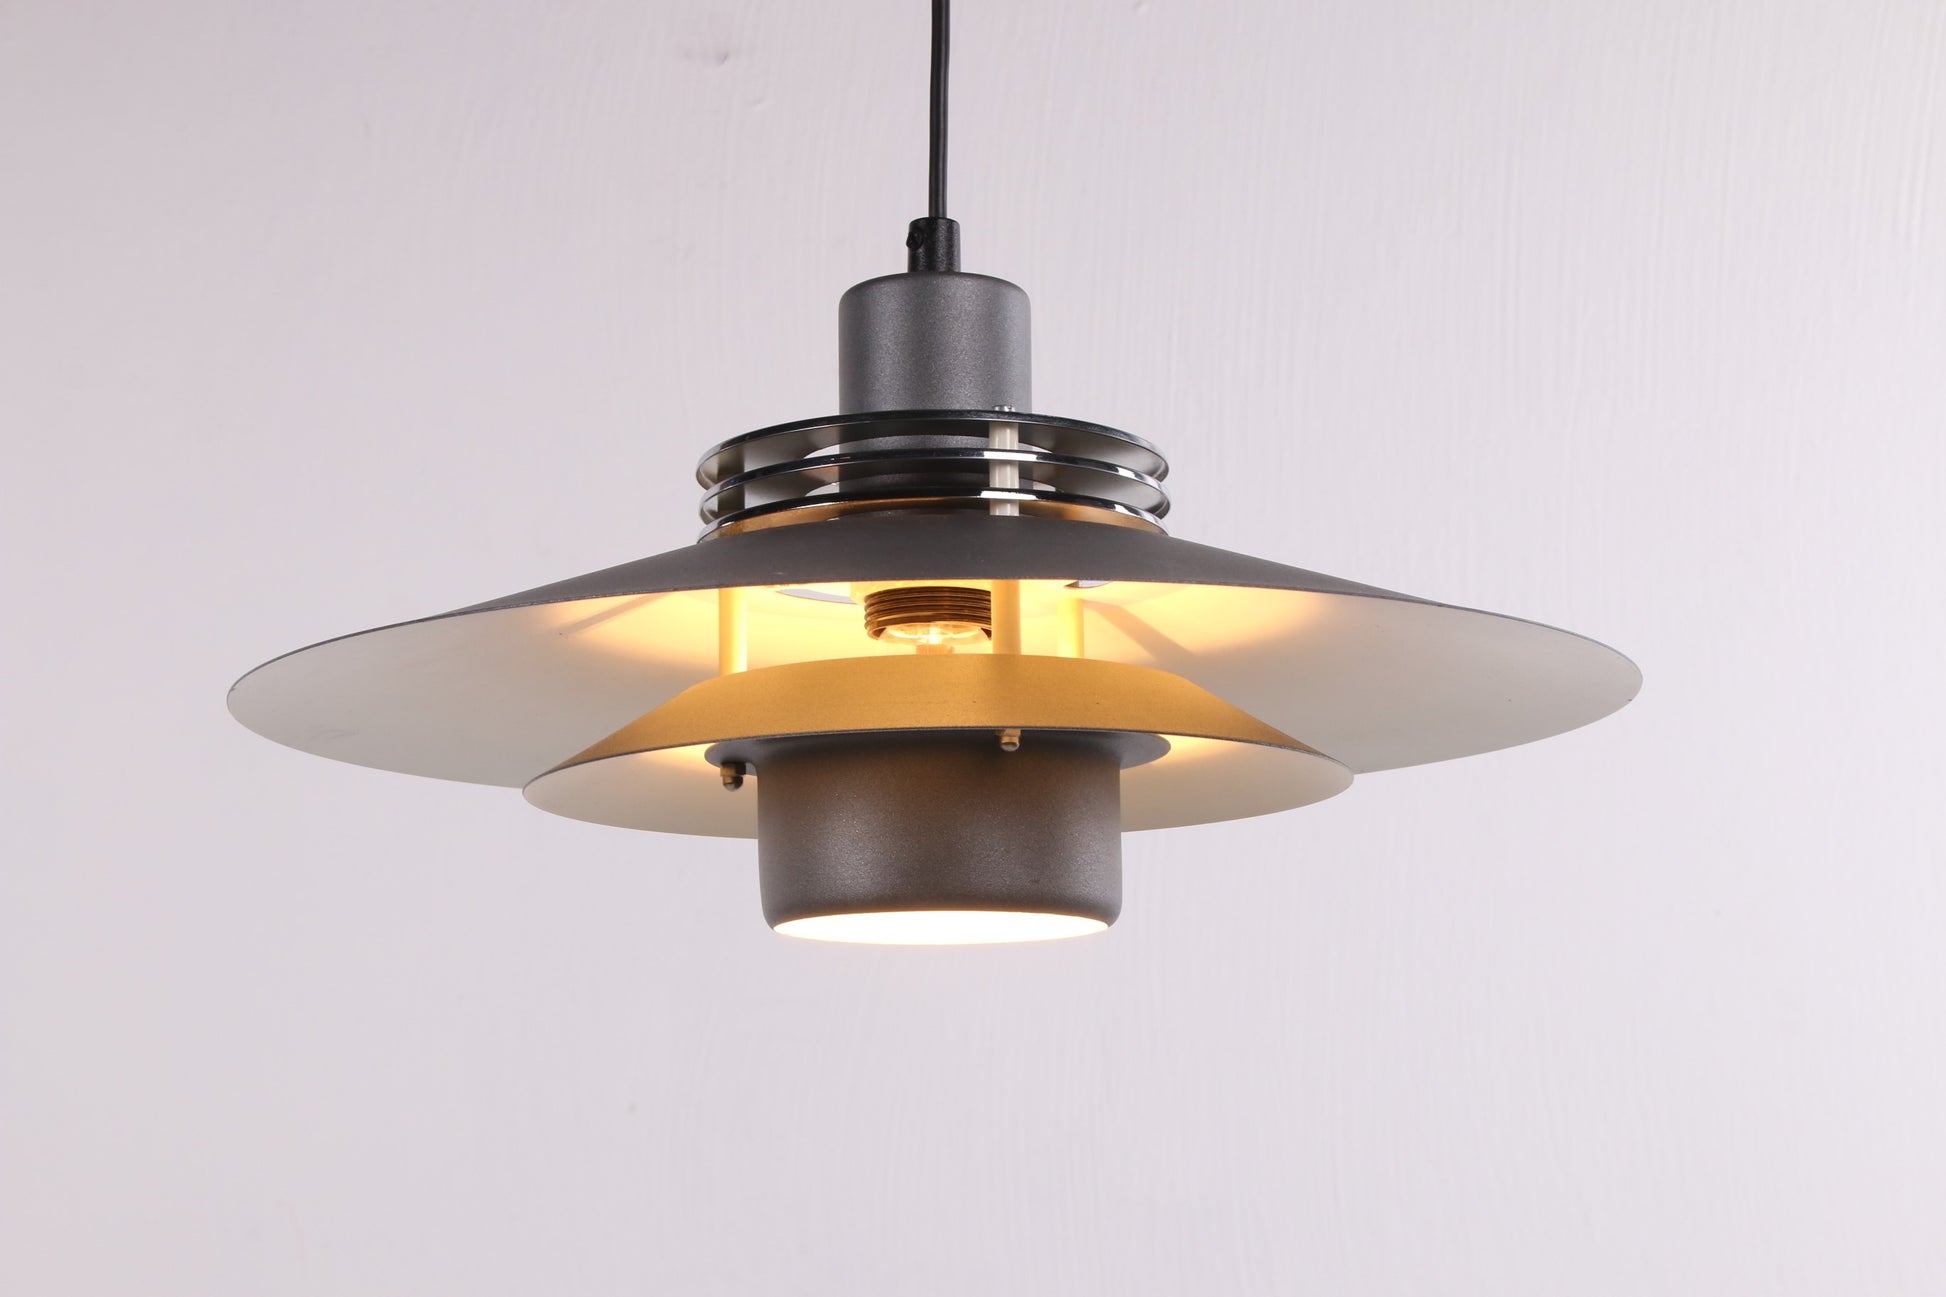 Deense Design Hanglamp Aluminium grijs van kleur voorkant licht aan